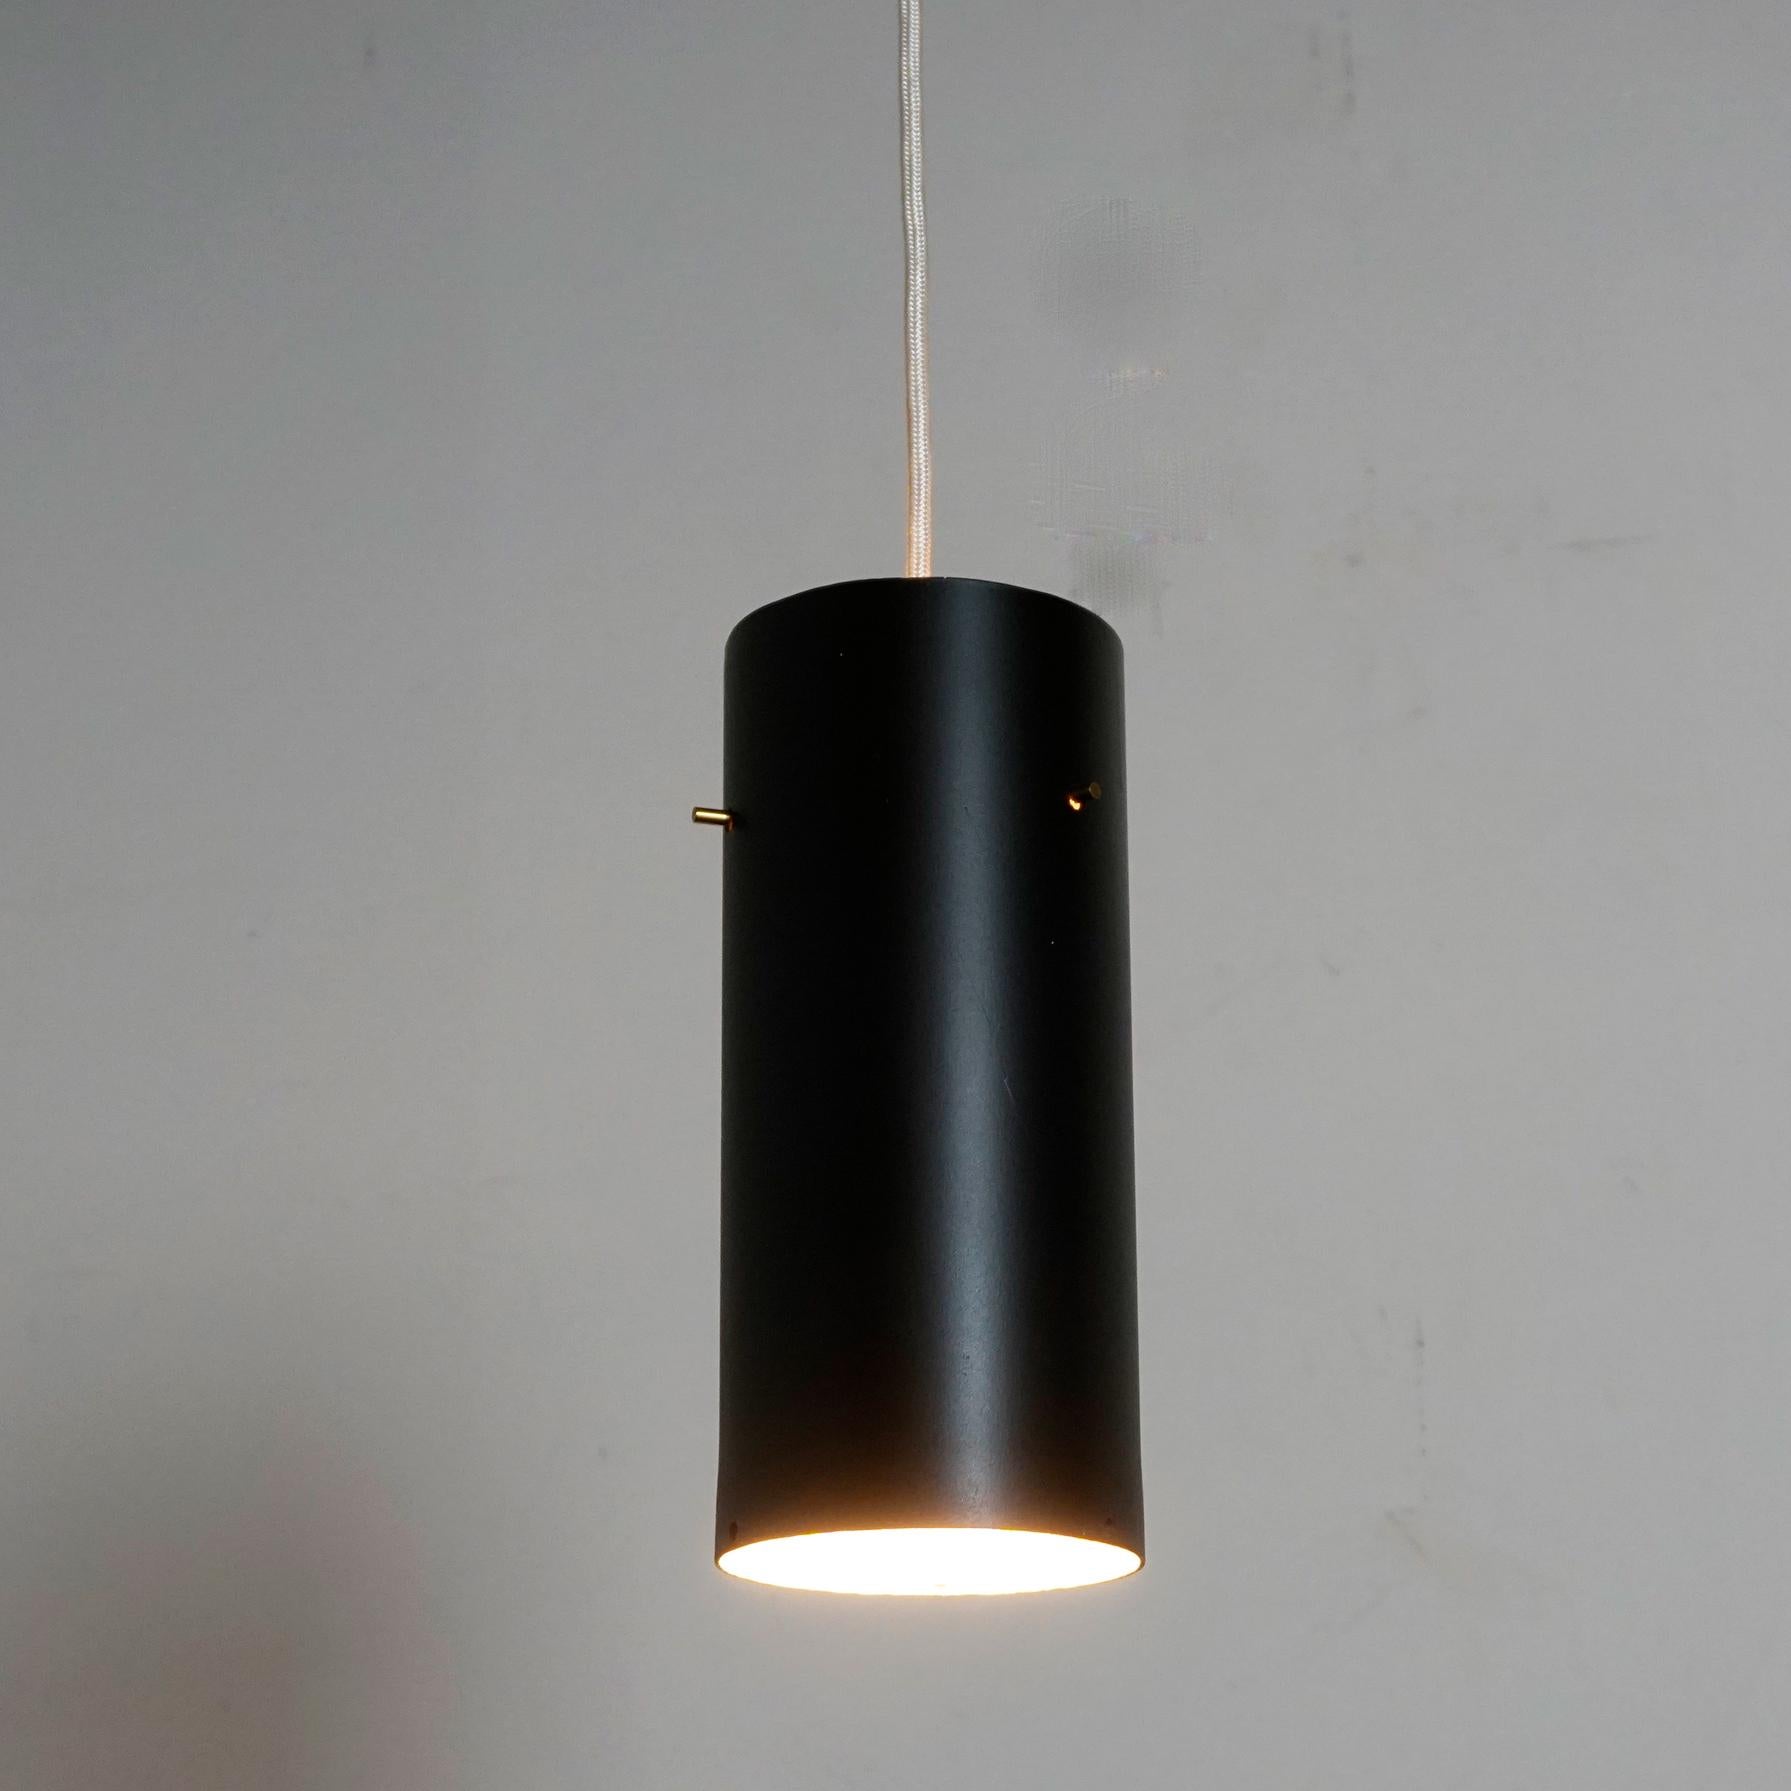 Cette magnifique lampe suspendue de forme zylindrique a été conçue et fabriquée par J. T. Kalmar Vienne dans les années 1960. Il est doté d'un abat-jour laqué noir avec intérieur blanc, d'une douille E 27 et de petits détails en laiton.
Sa forme